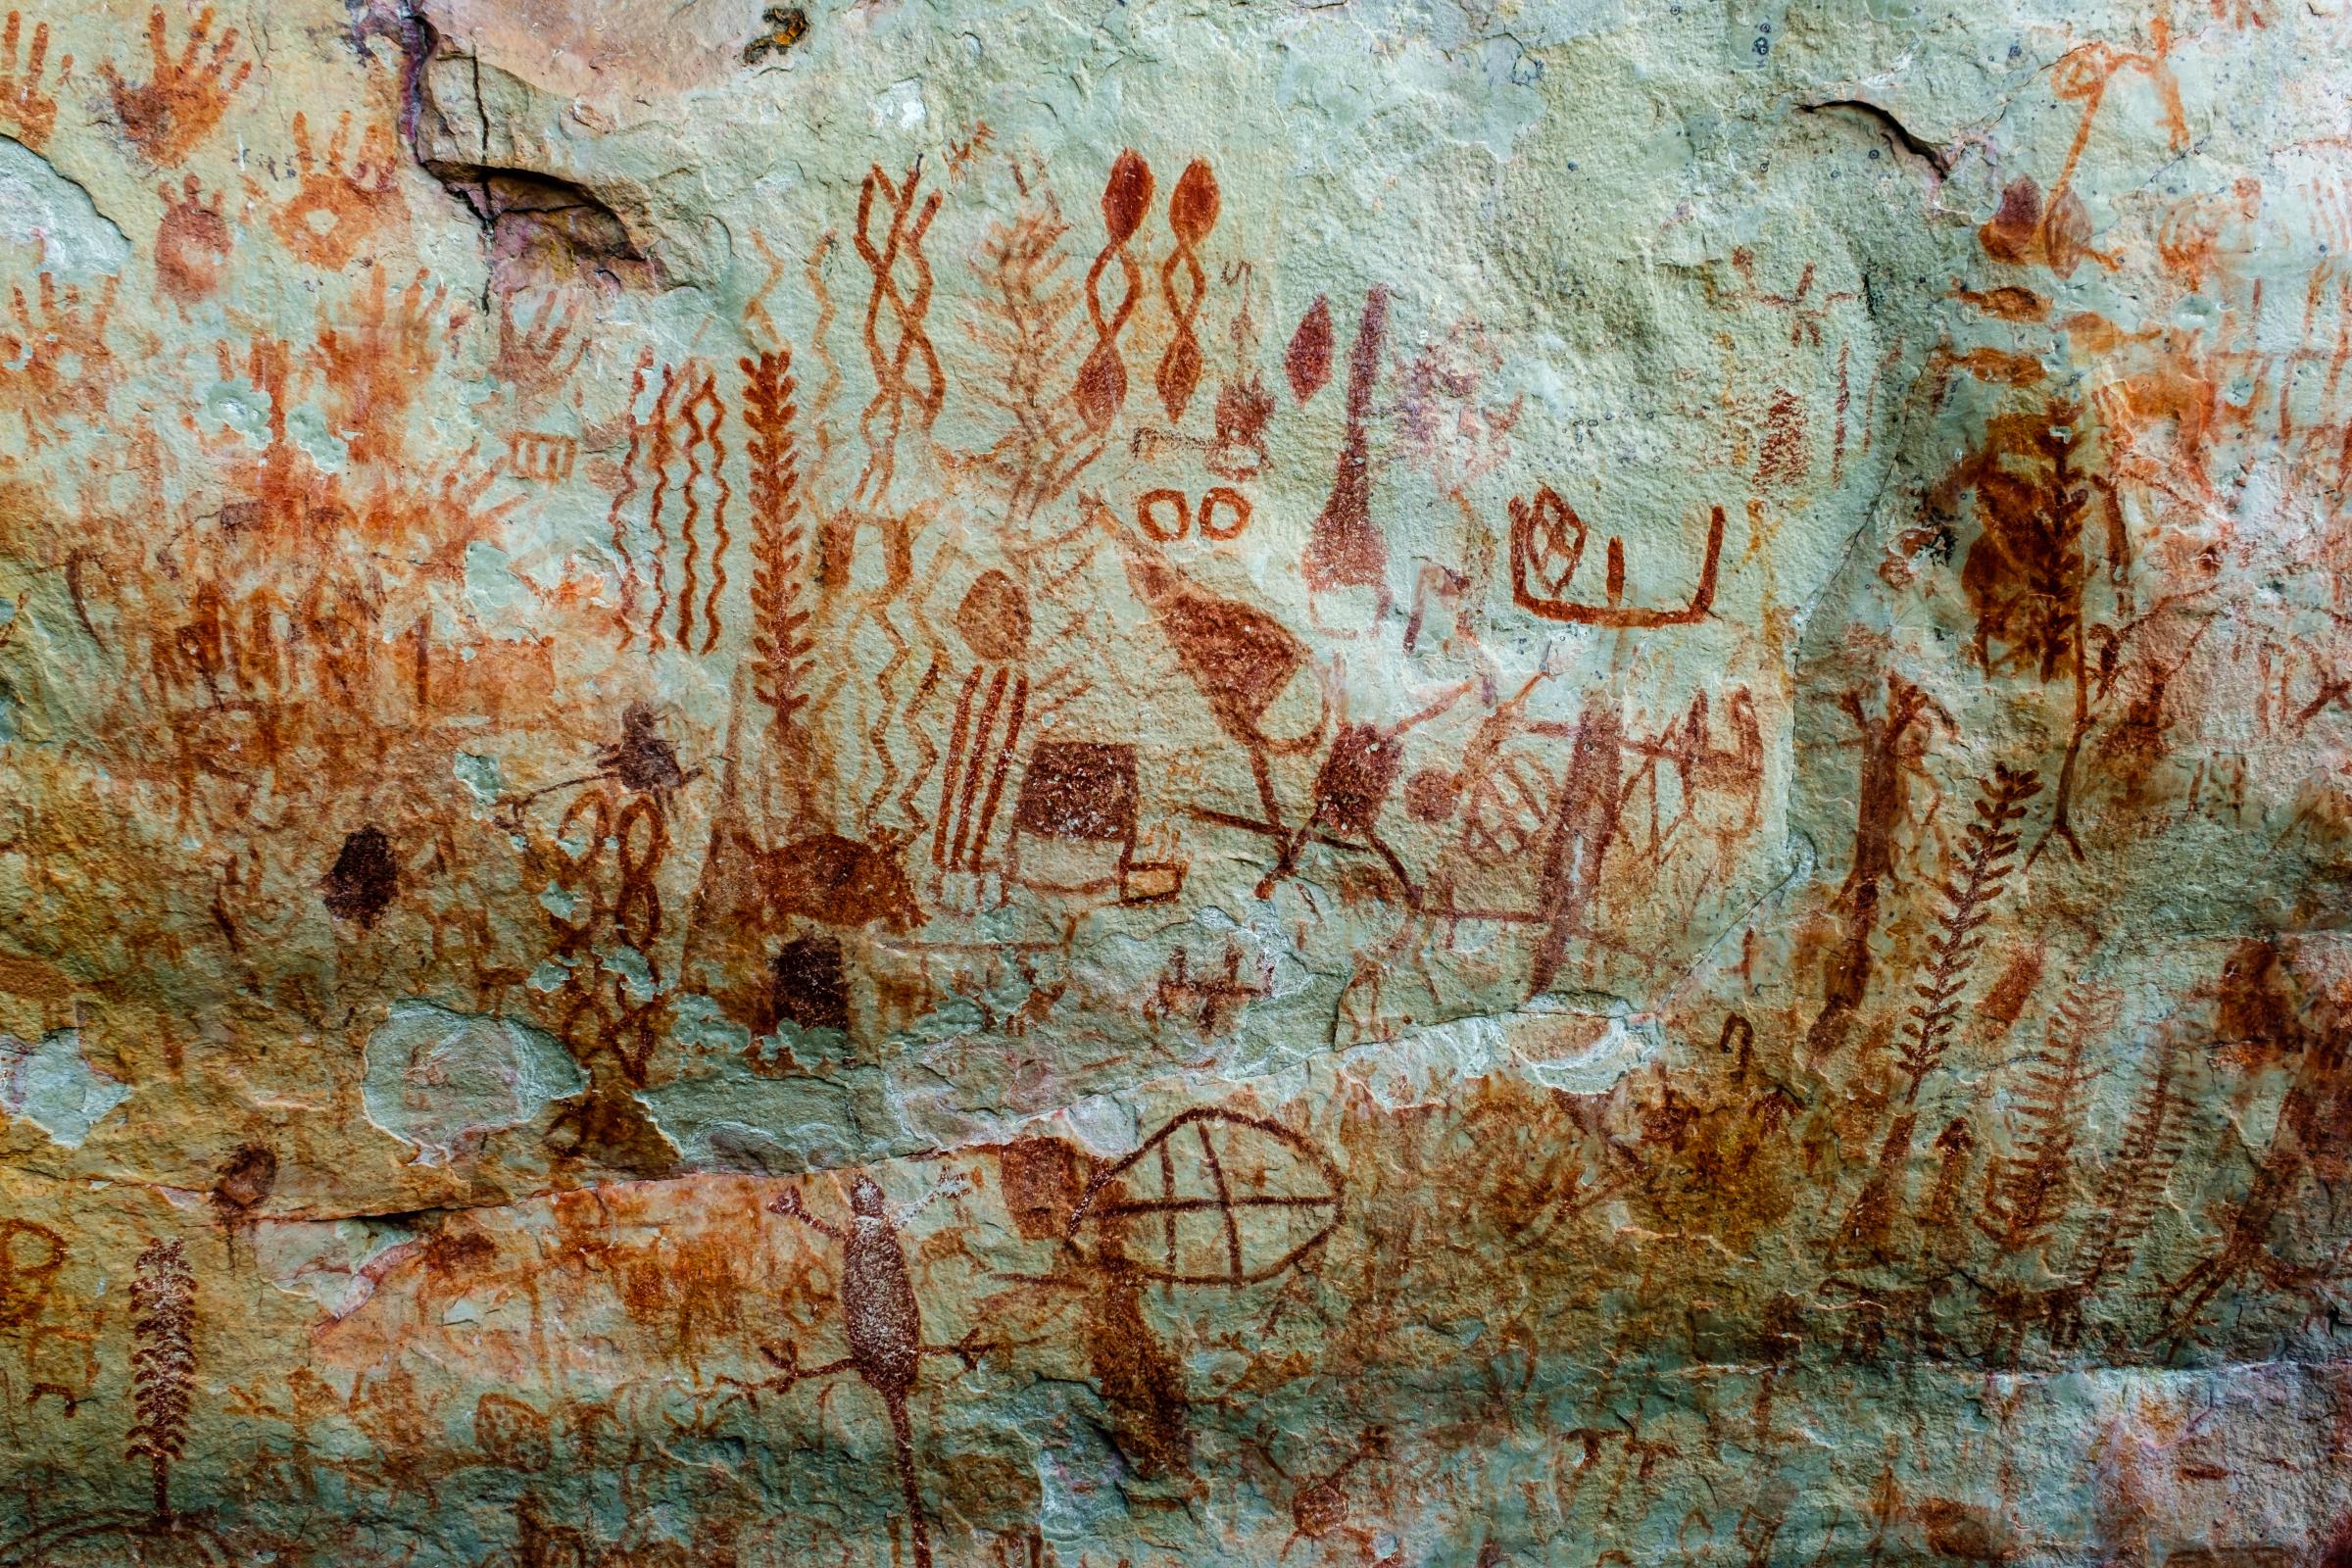 El Guaviare, Cave Paintings and Eco Tourism - Cerro Azul, Gravuras Rupestres. Mata amazonica. Guaviare,...